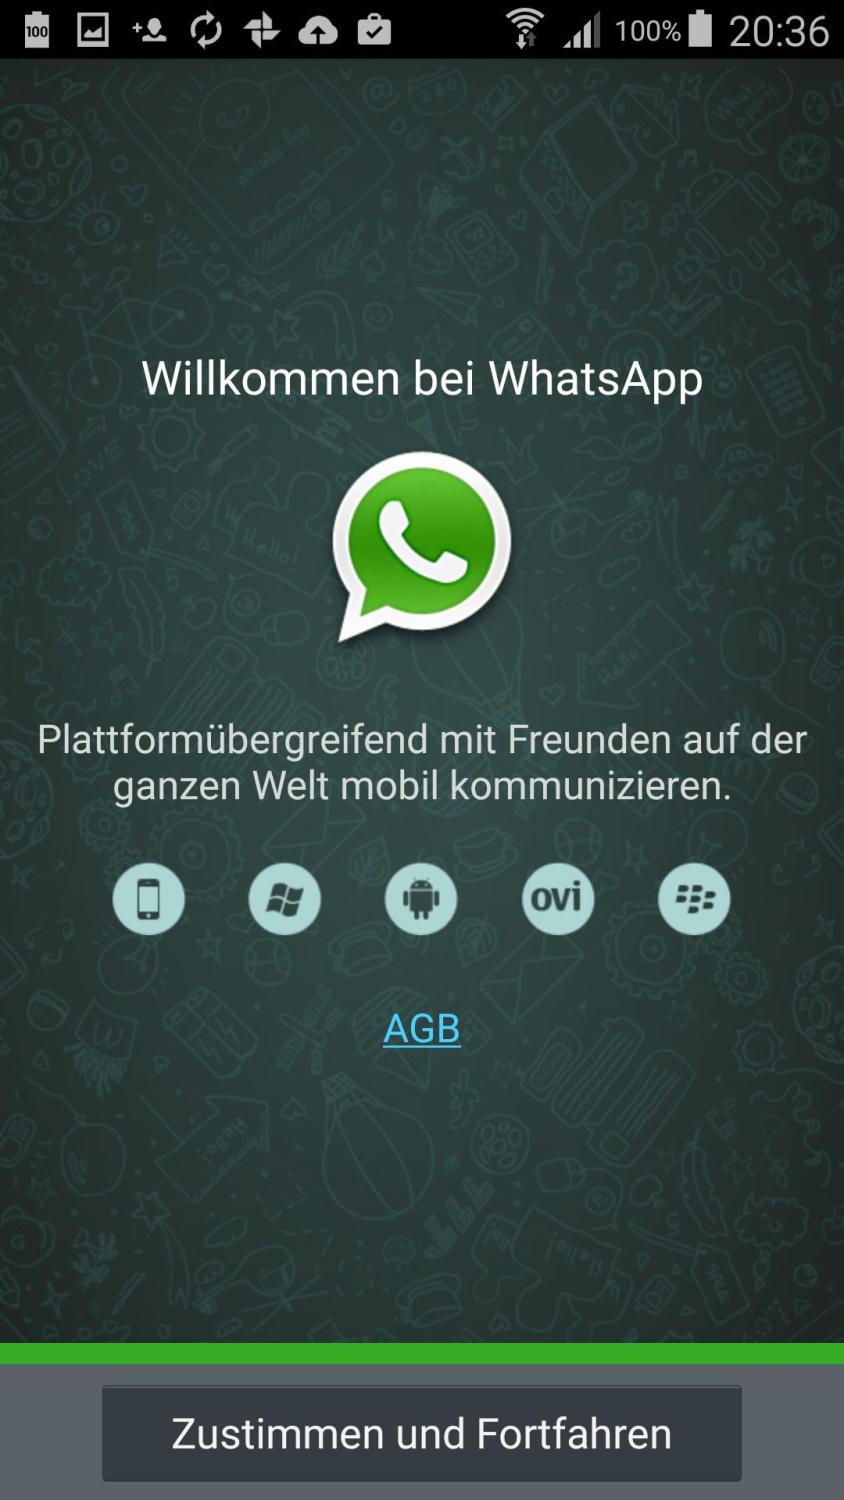 WhatsApp erklärt Alles was es zur ChatApp zu wissen